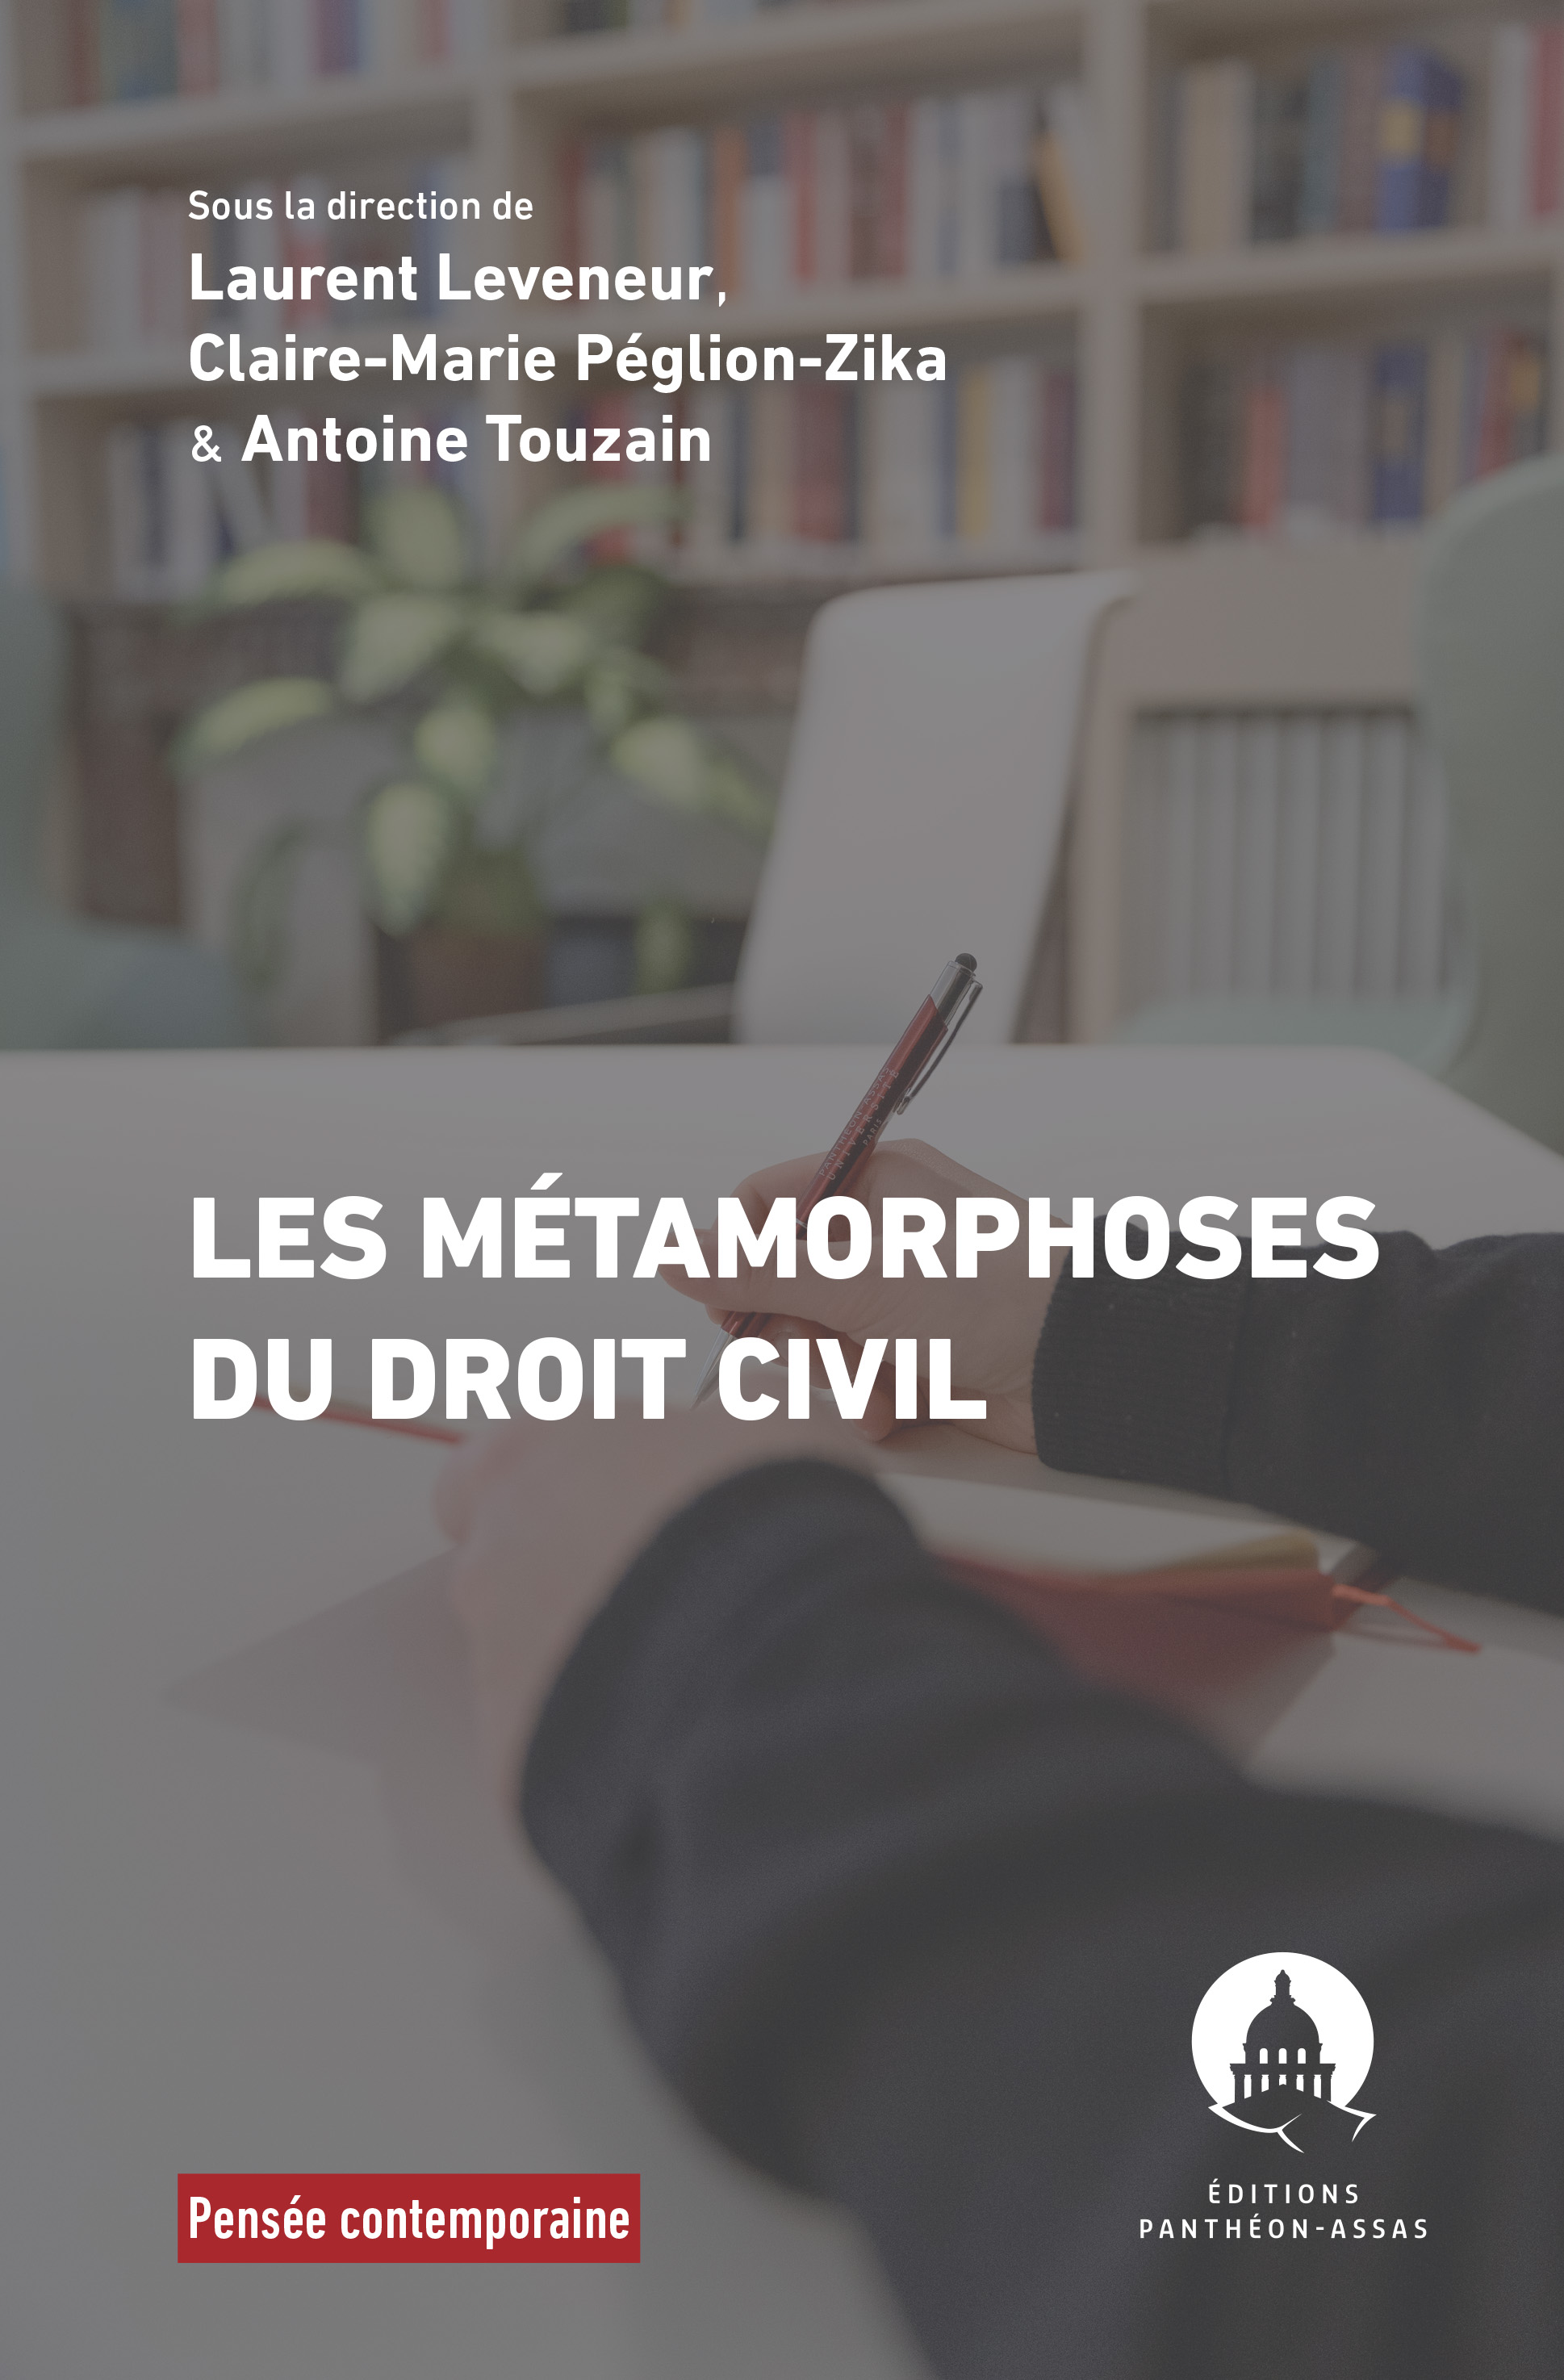 Couverture de l'ouvrage Les Métamorphoses du droit civil dirigé par Laurent Leveneur, Claire-Marie Péglion-Zika et Antoine Touzain